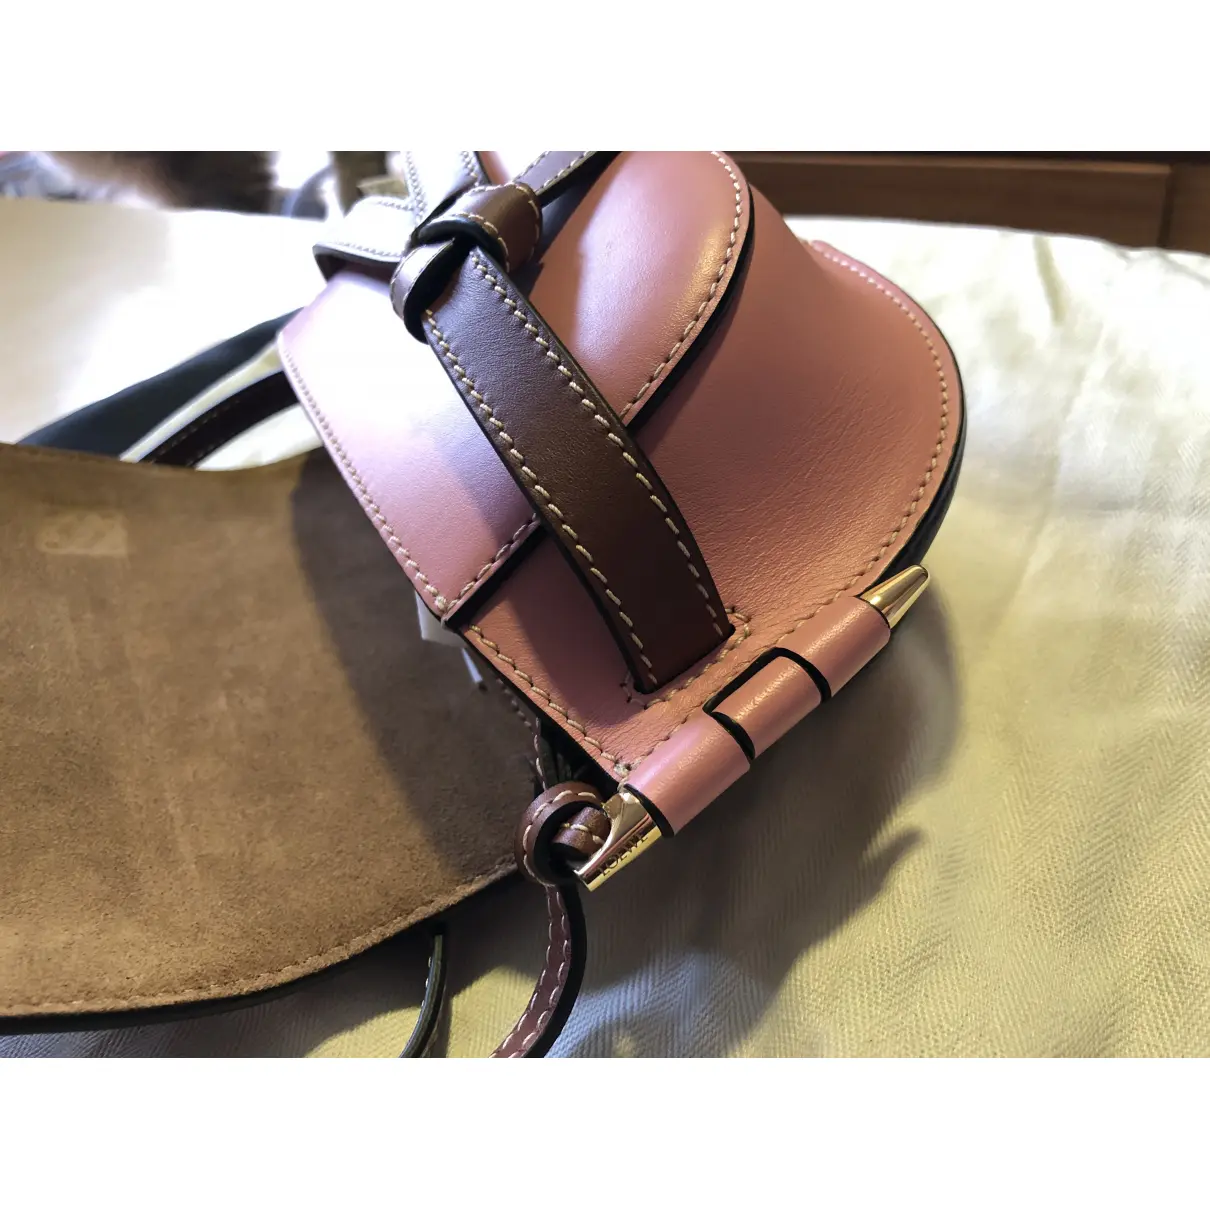 Buy Loewe Gate leather handbag online